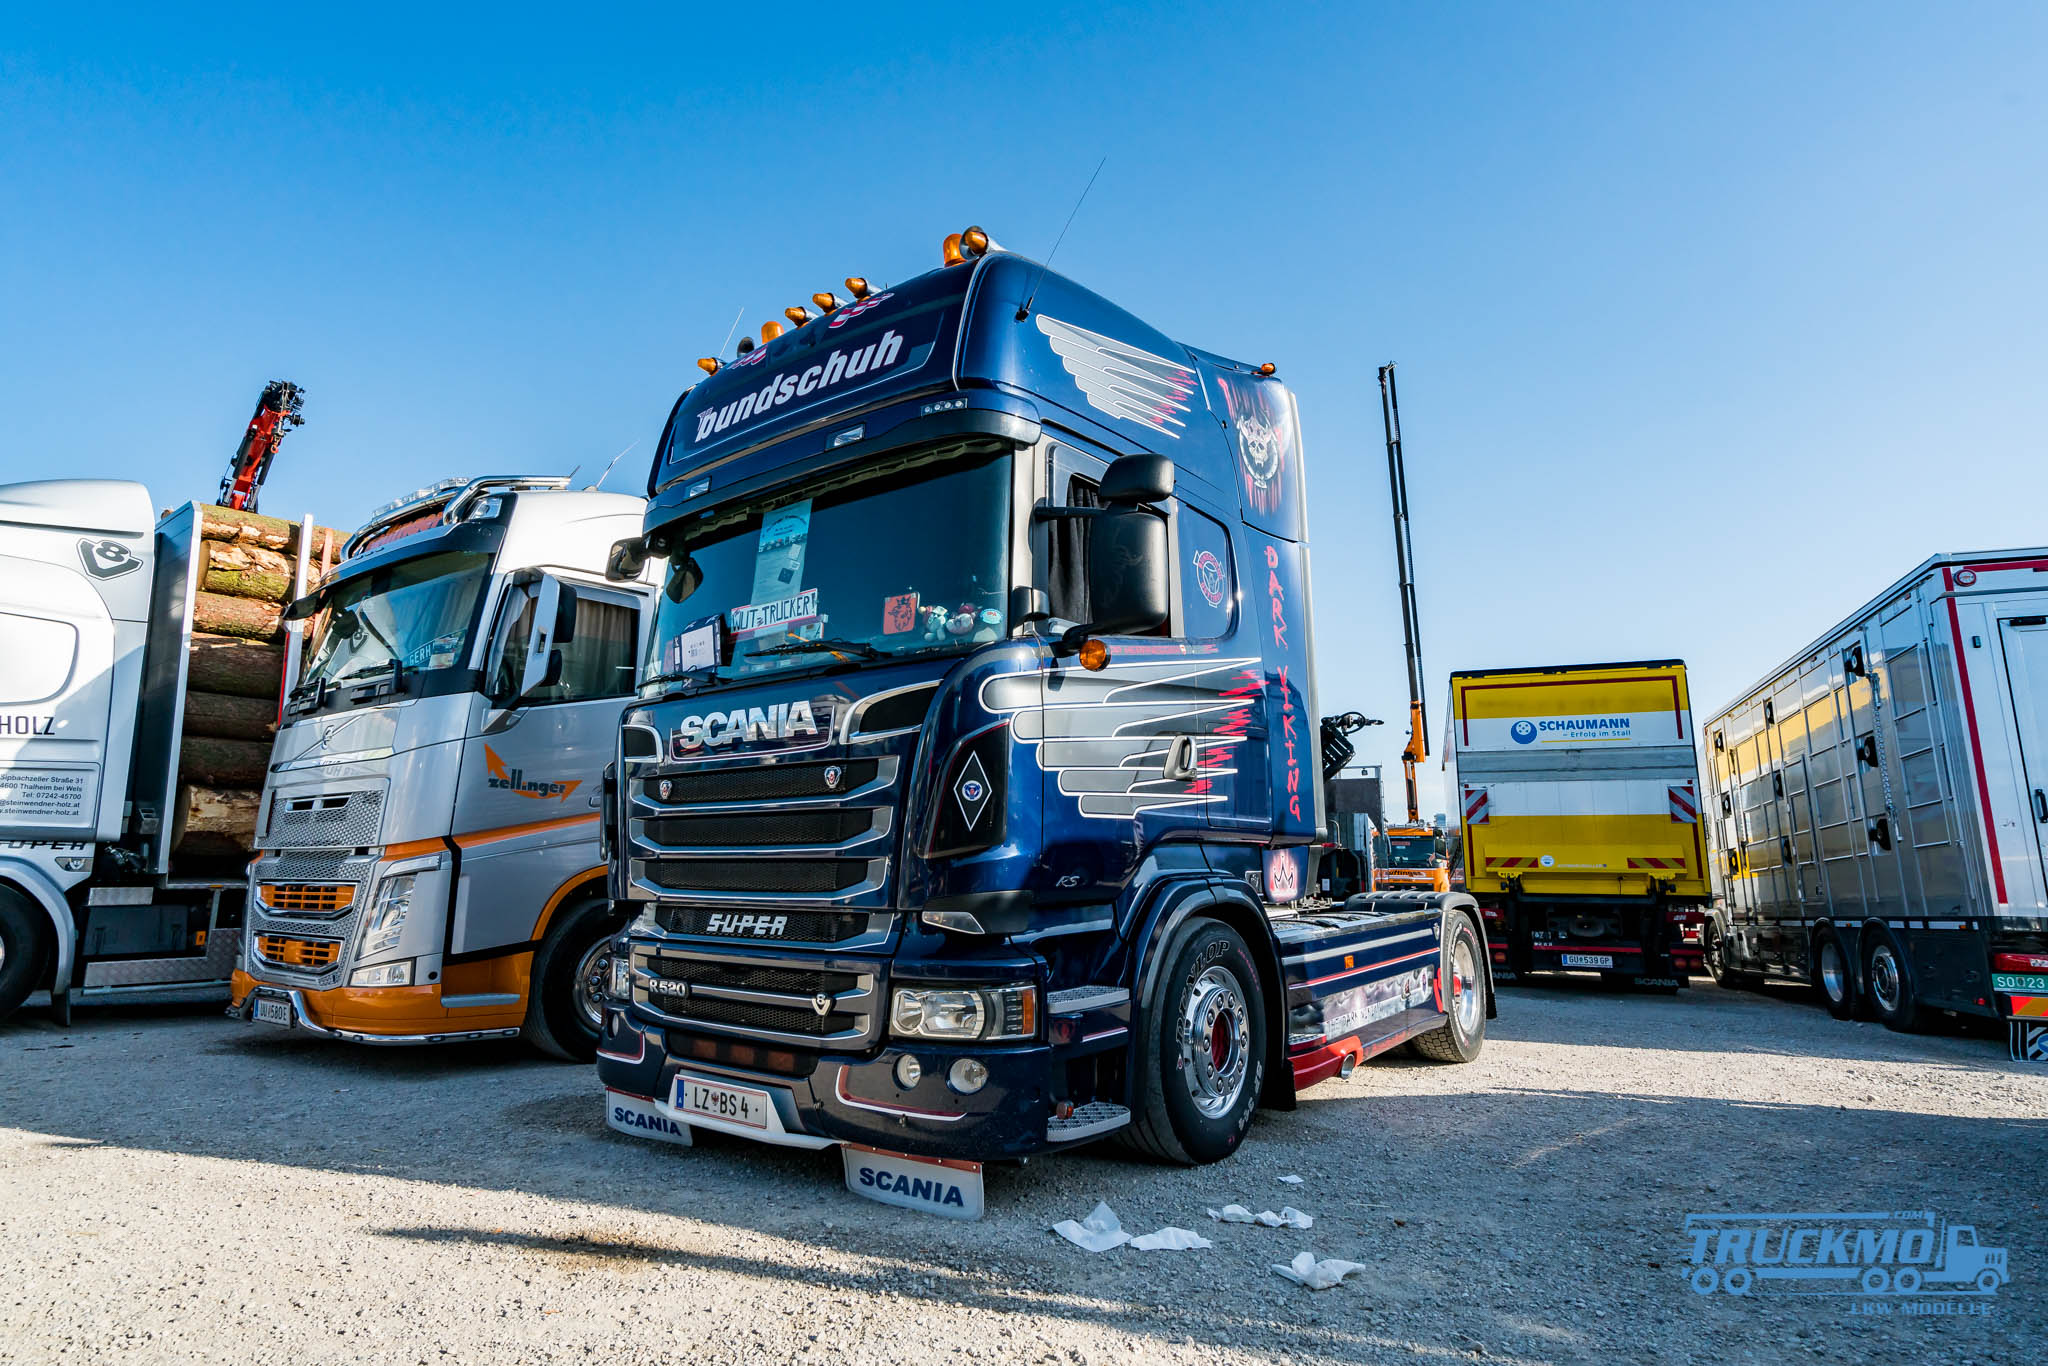 Truck_Event_Austria_Vorchdorf_2017_Truckmo_Scania_MAN_Volvo_Mercedes_Iveco_Showtruck_LKW_Herpa_Modellbau_Beitrag_5 (77 von 89)